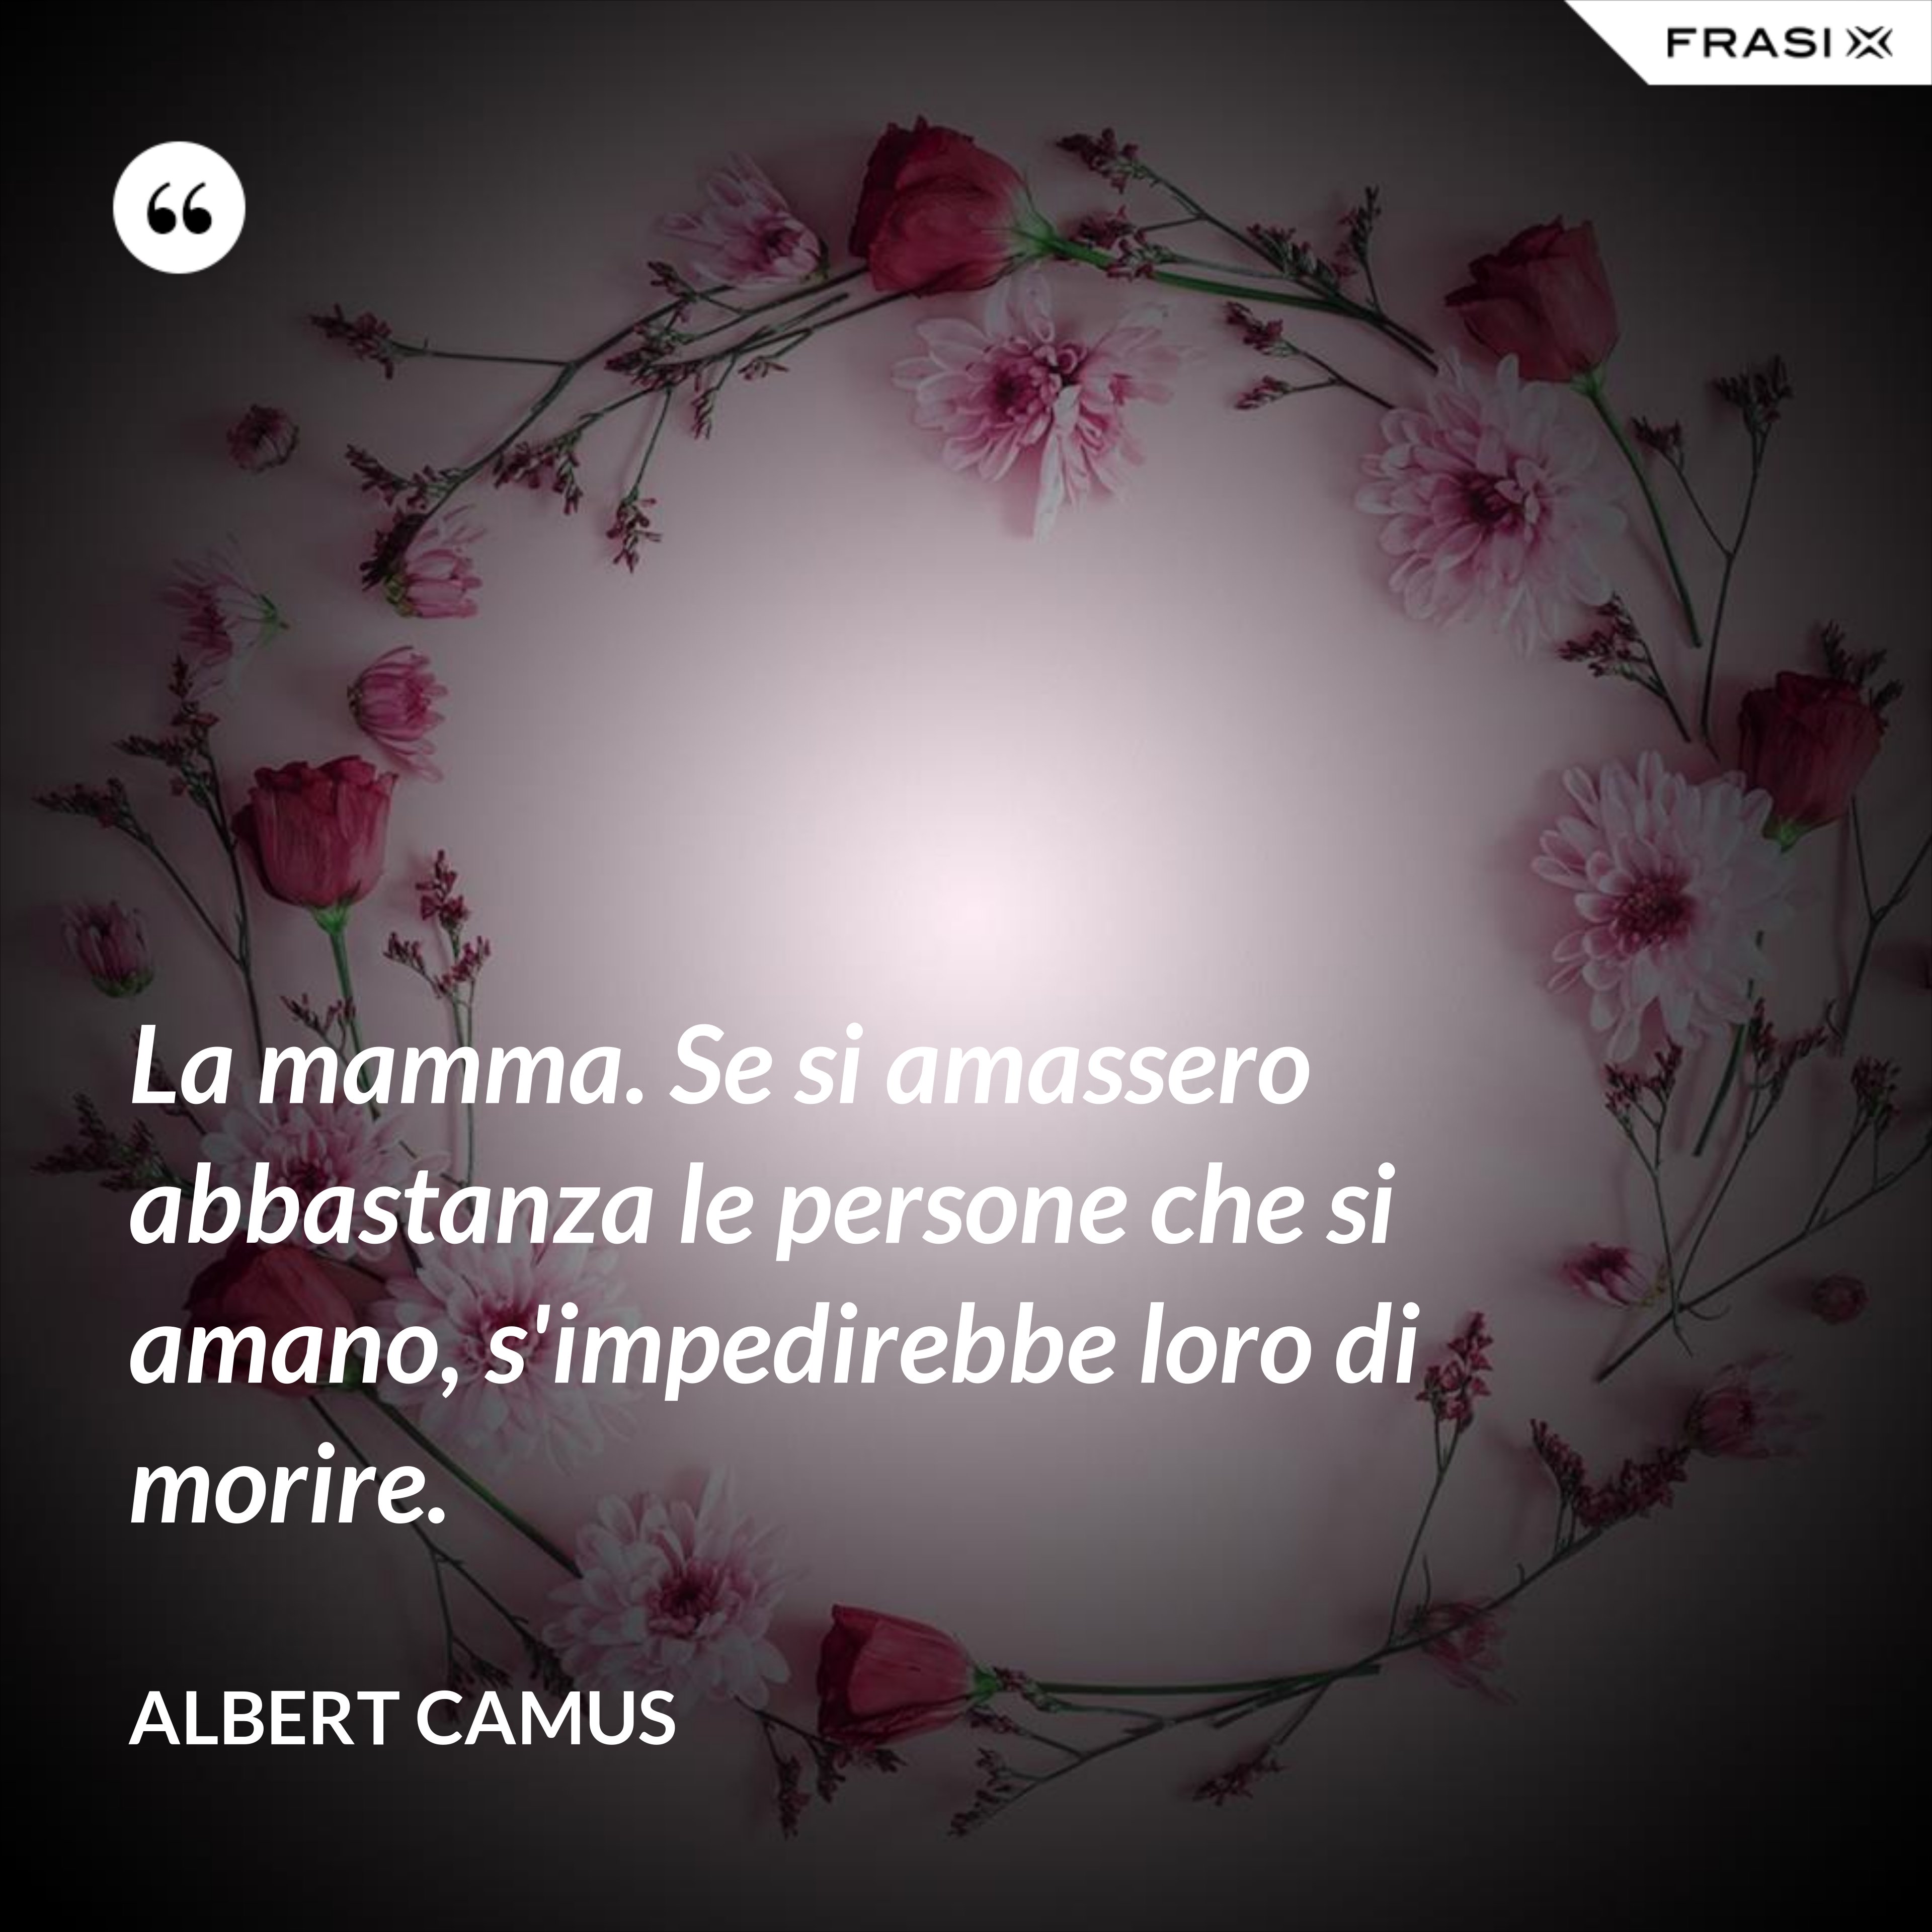 La mamma. Se si amassero abbastanza le persone che si amano, s'impedirebbe loro di morire. - Albert Camus